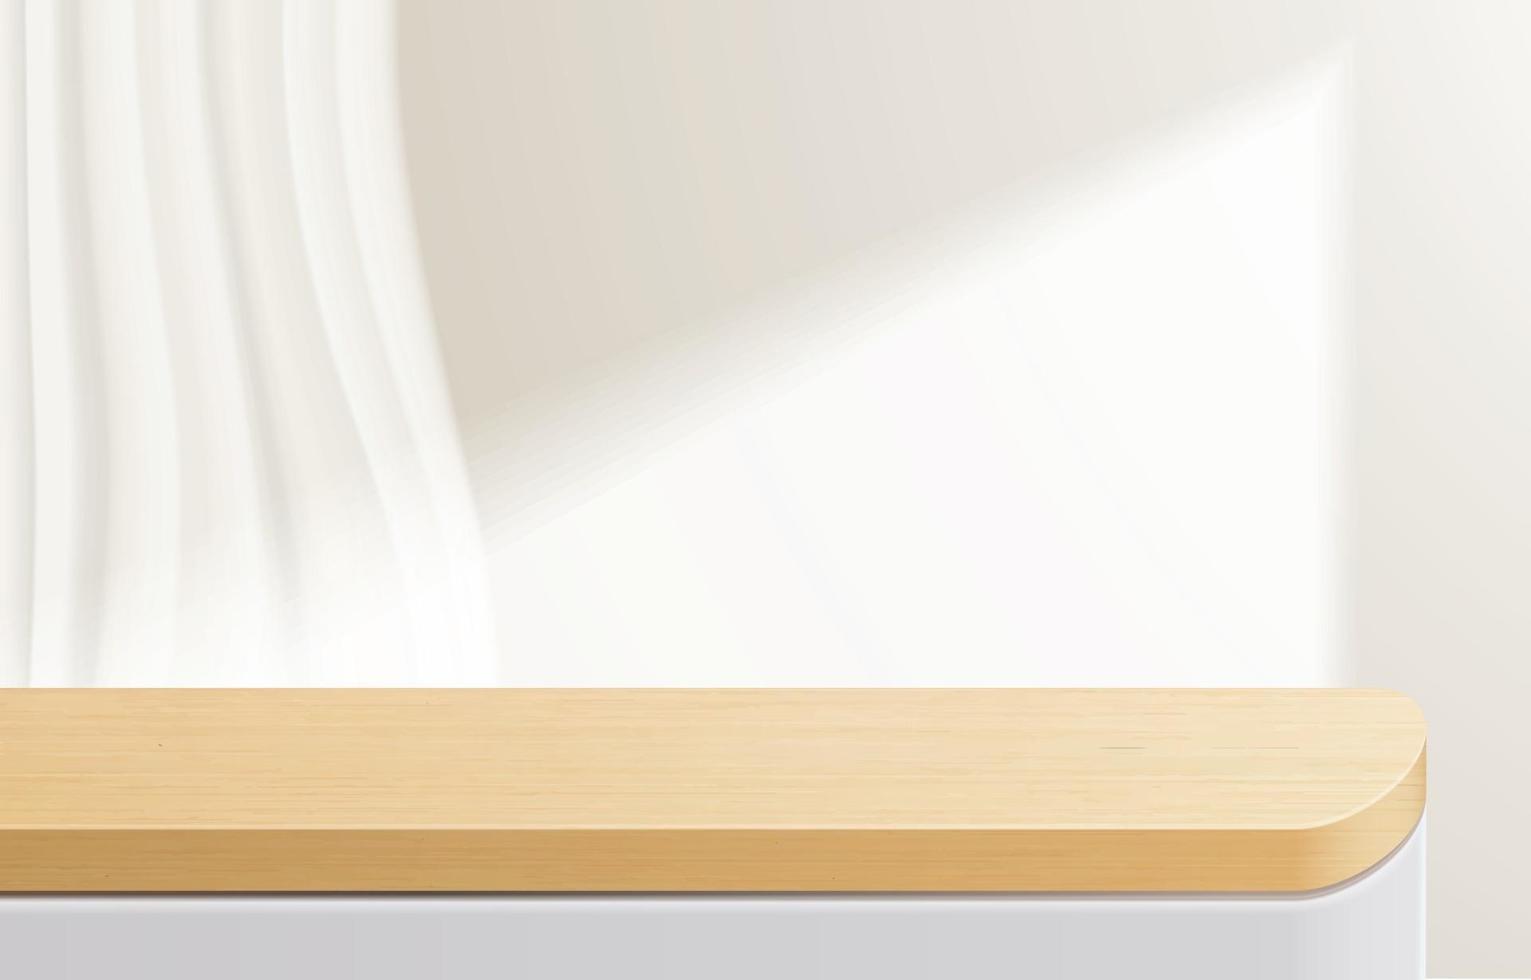 leerer minimaler Holztisch, Holzpodest in weißem Hintergrund. für Produktpräsentation, Mock-Up, Show-Kosmetik-Display, Podium, Bühnenpodest oder Podest. 3D-Vektor vektor